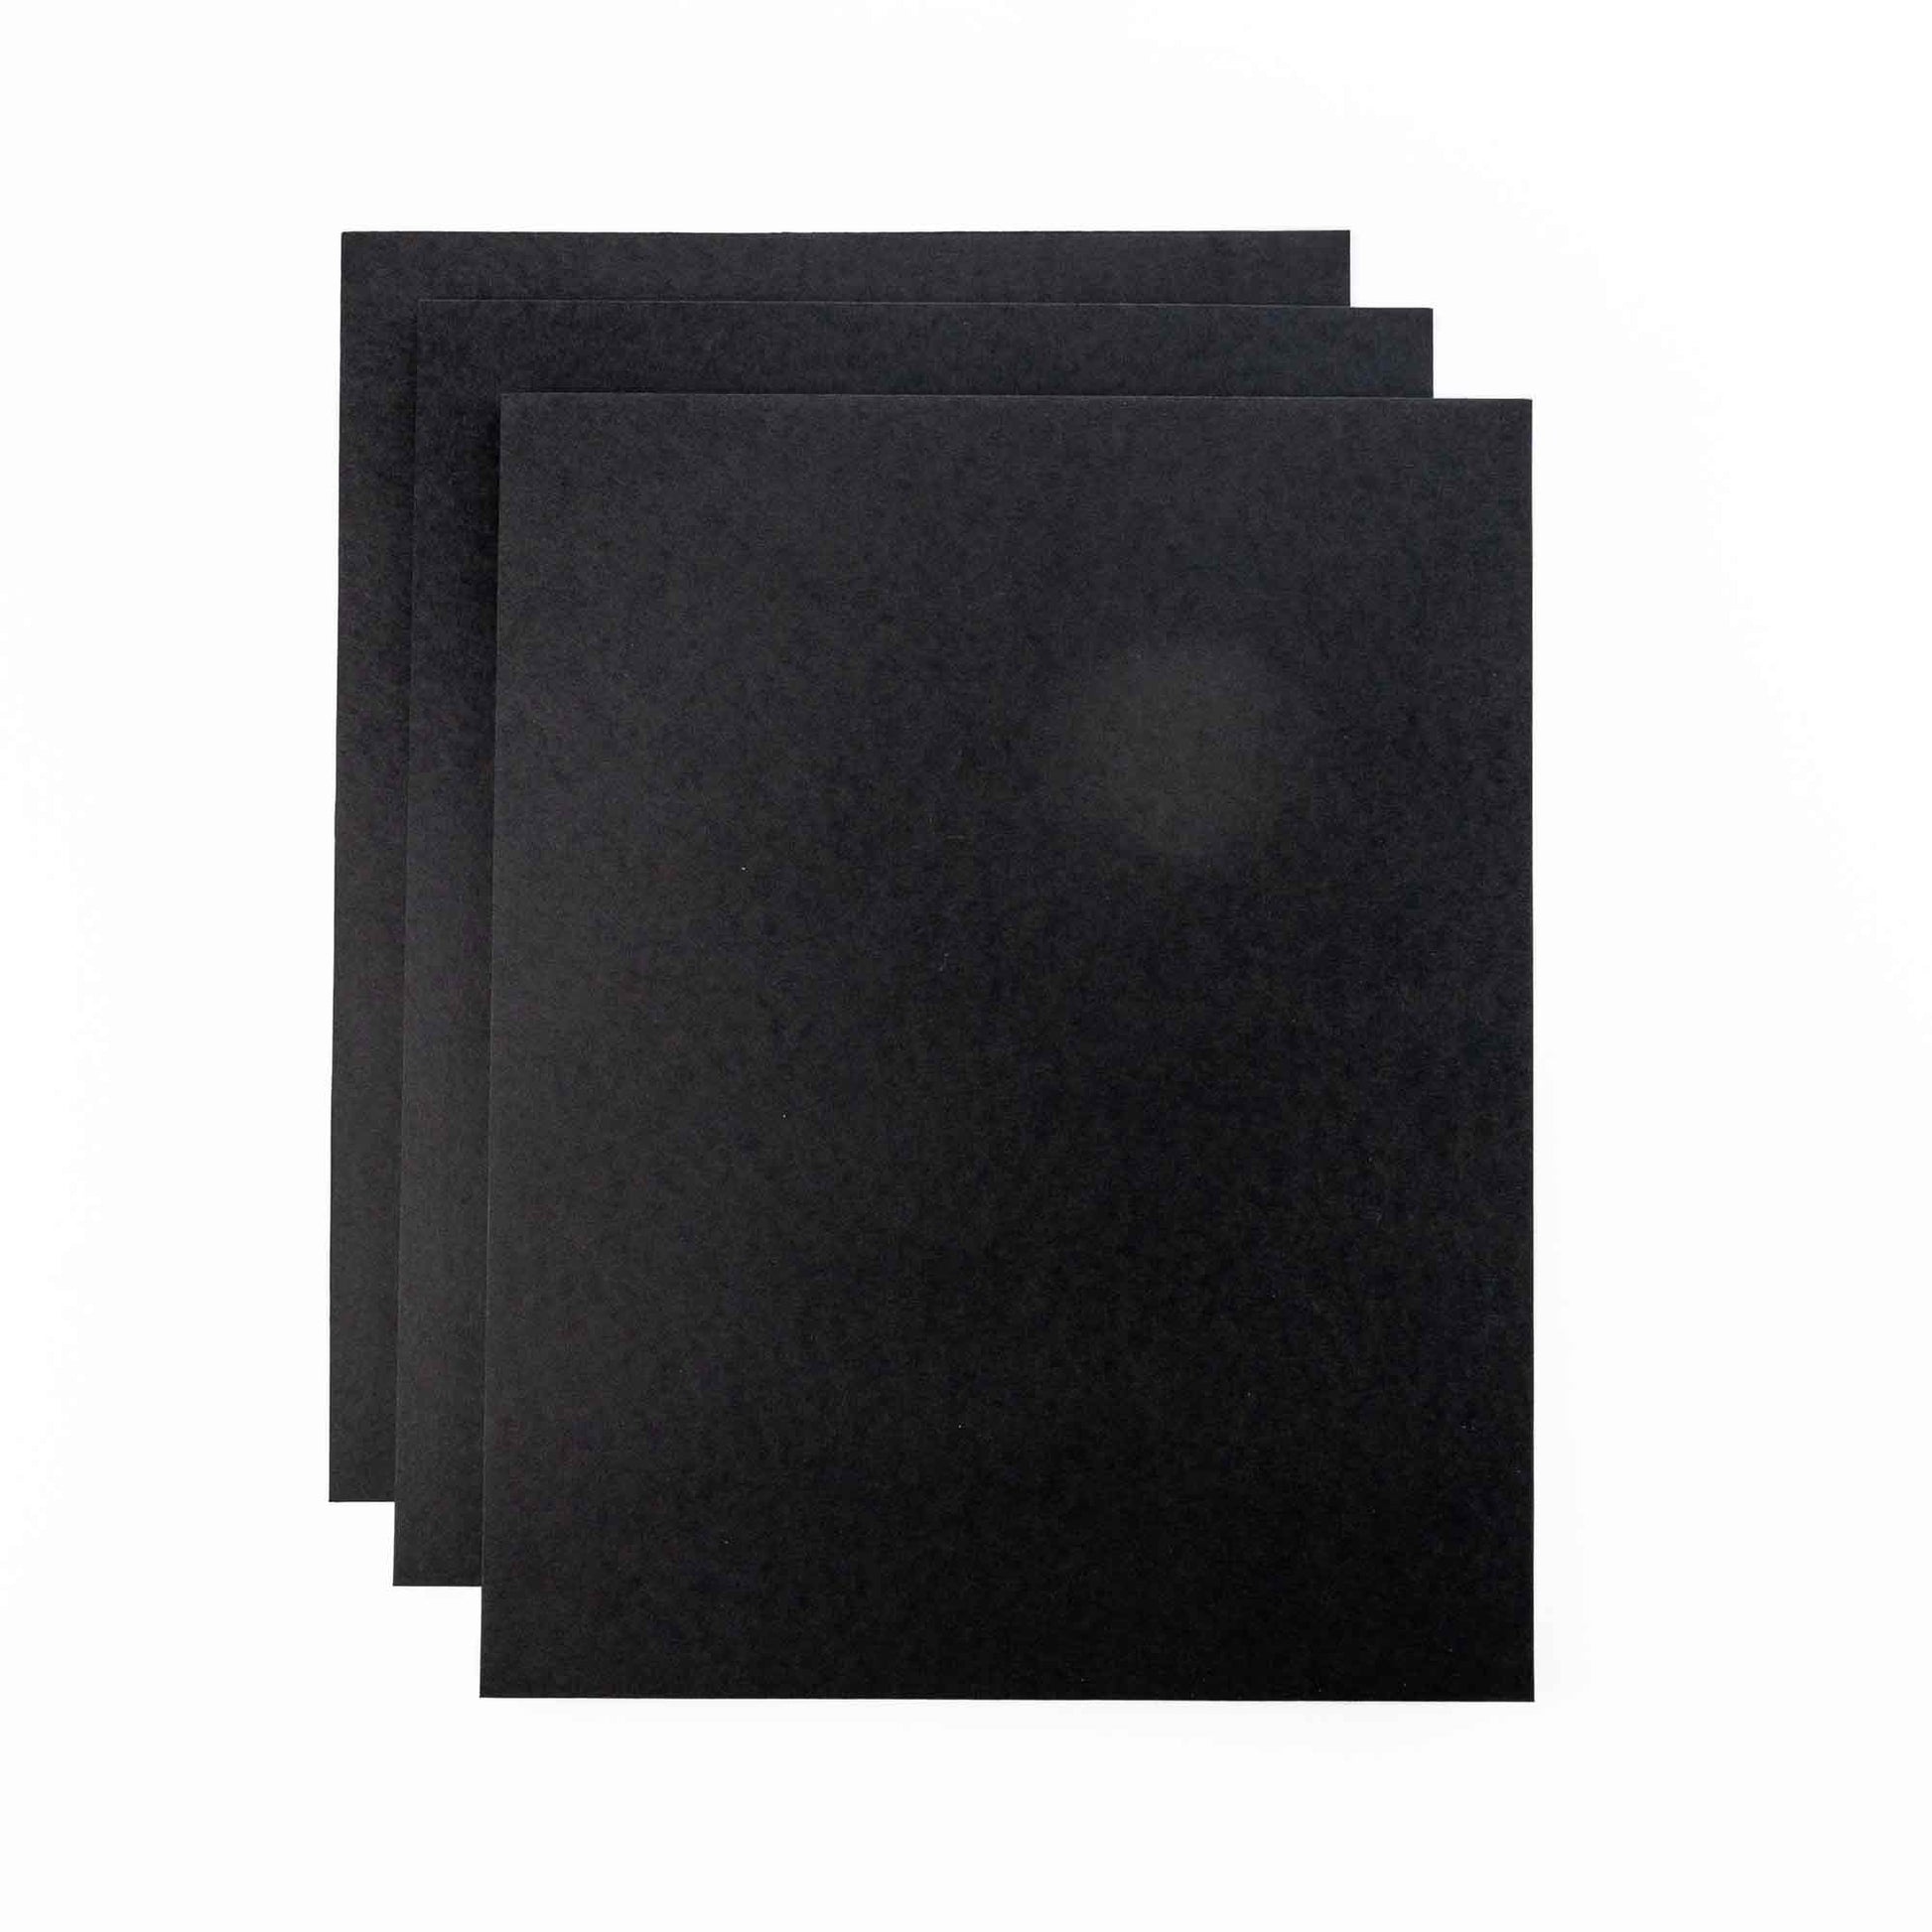 Foam Board Black 1/2in 30x40 (Box of 25)